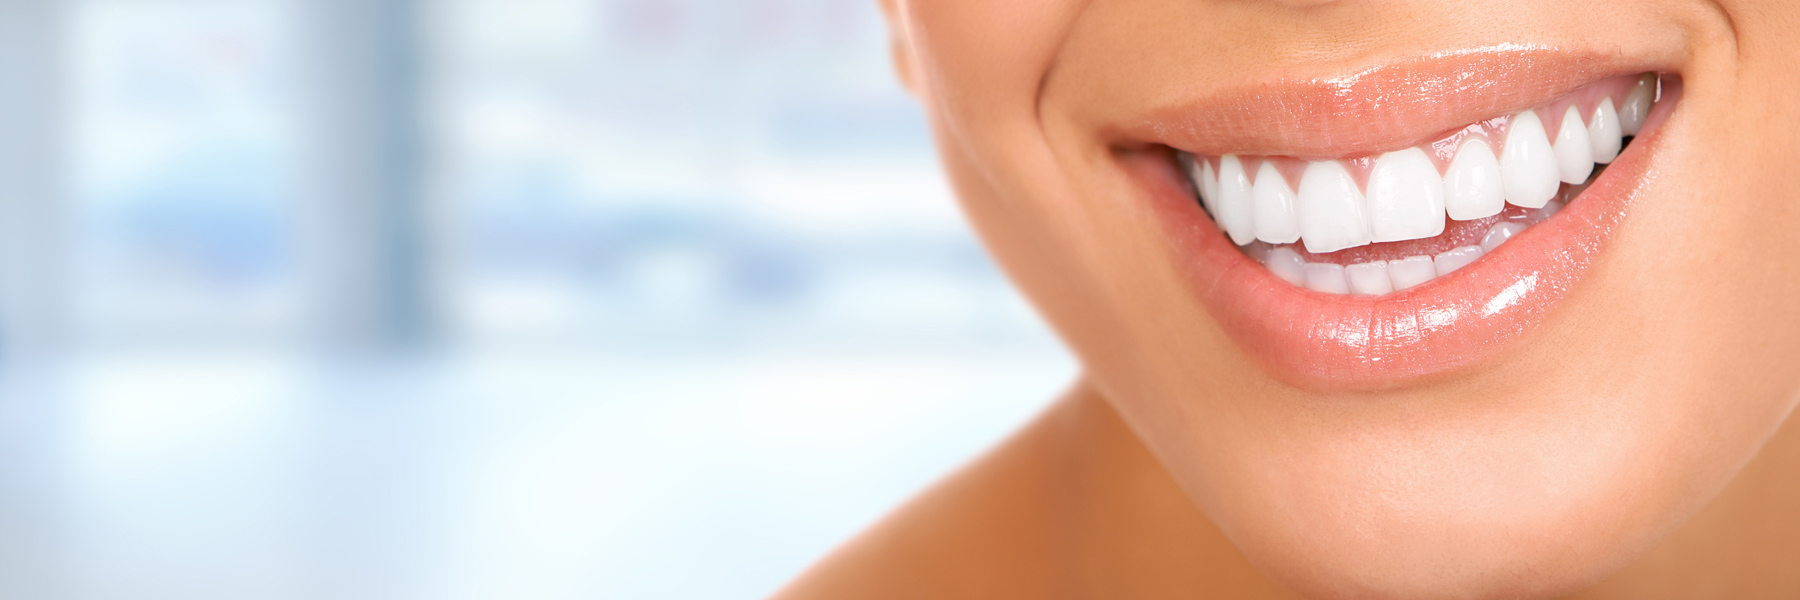 Esatpaşa Ağız ve Diş Sağlığı Polikliniği